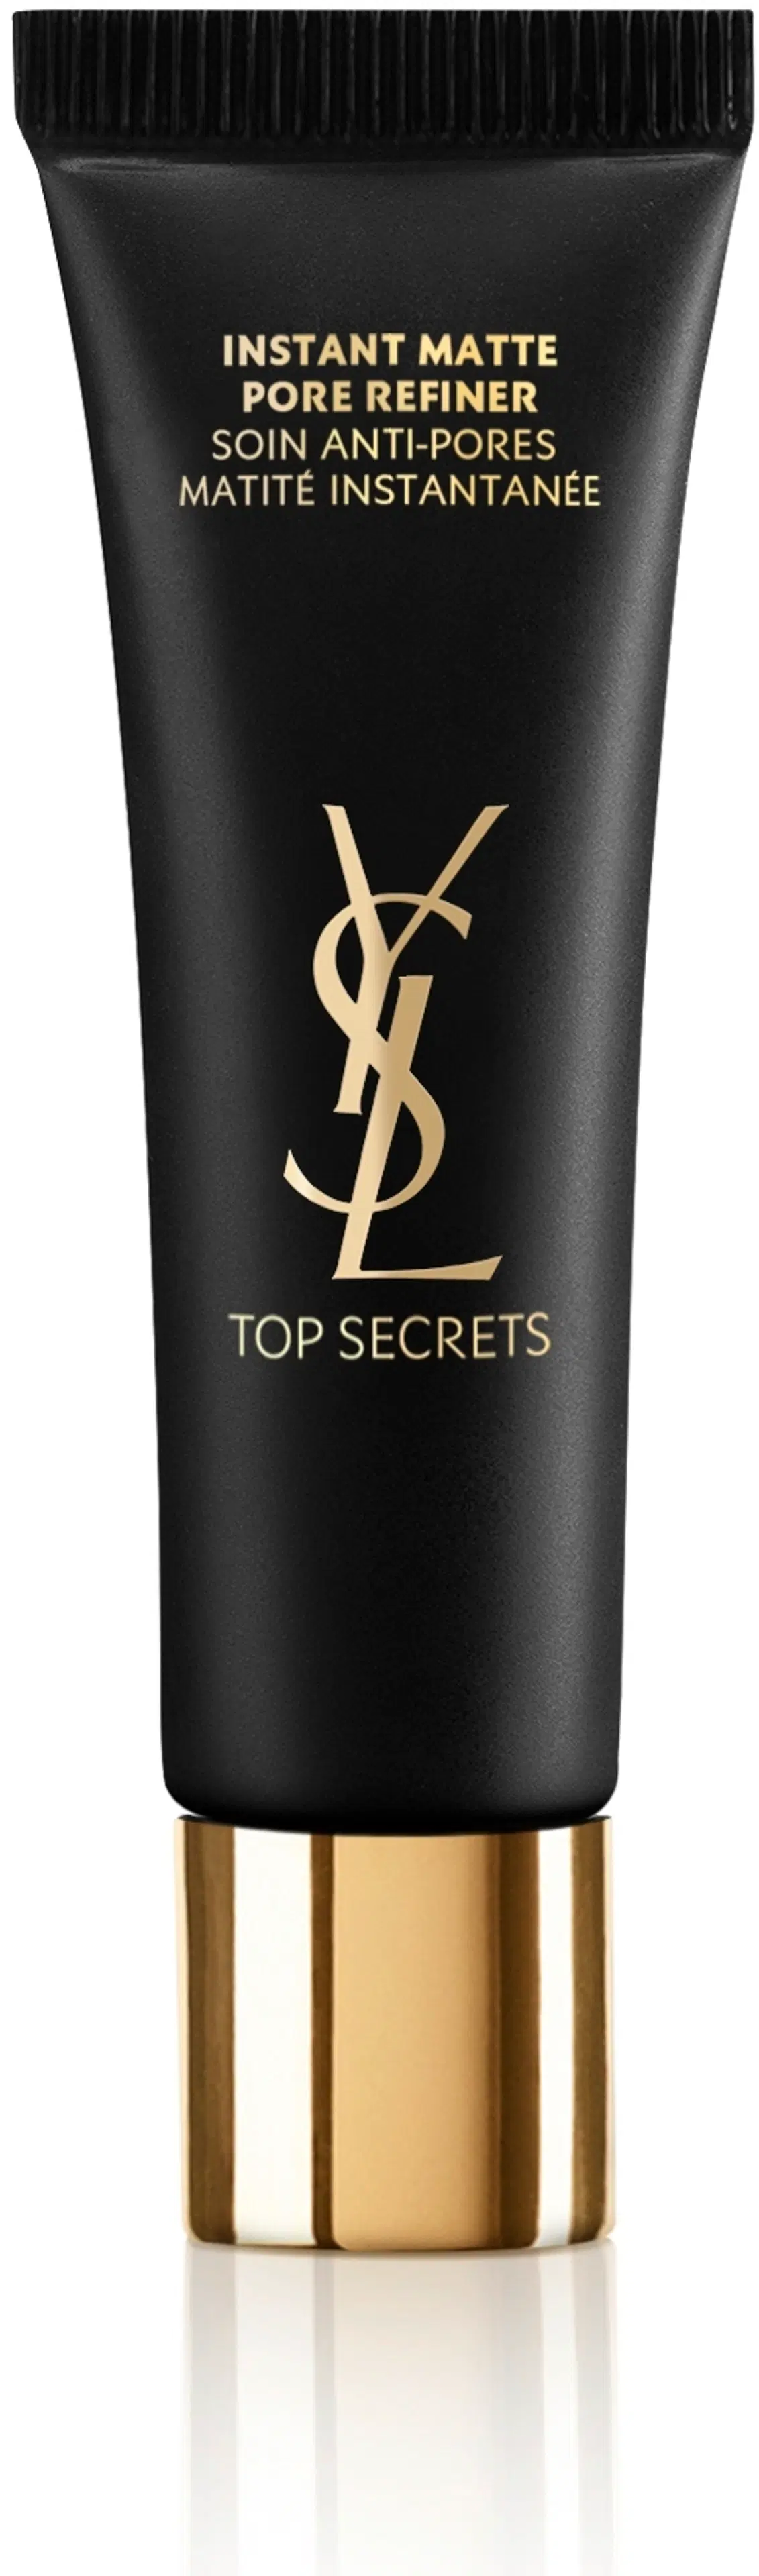 Yves Saint Laurent Top Secrets Instant Matte Pore Refiner kosteusvoide 30 ml